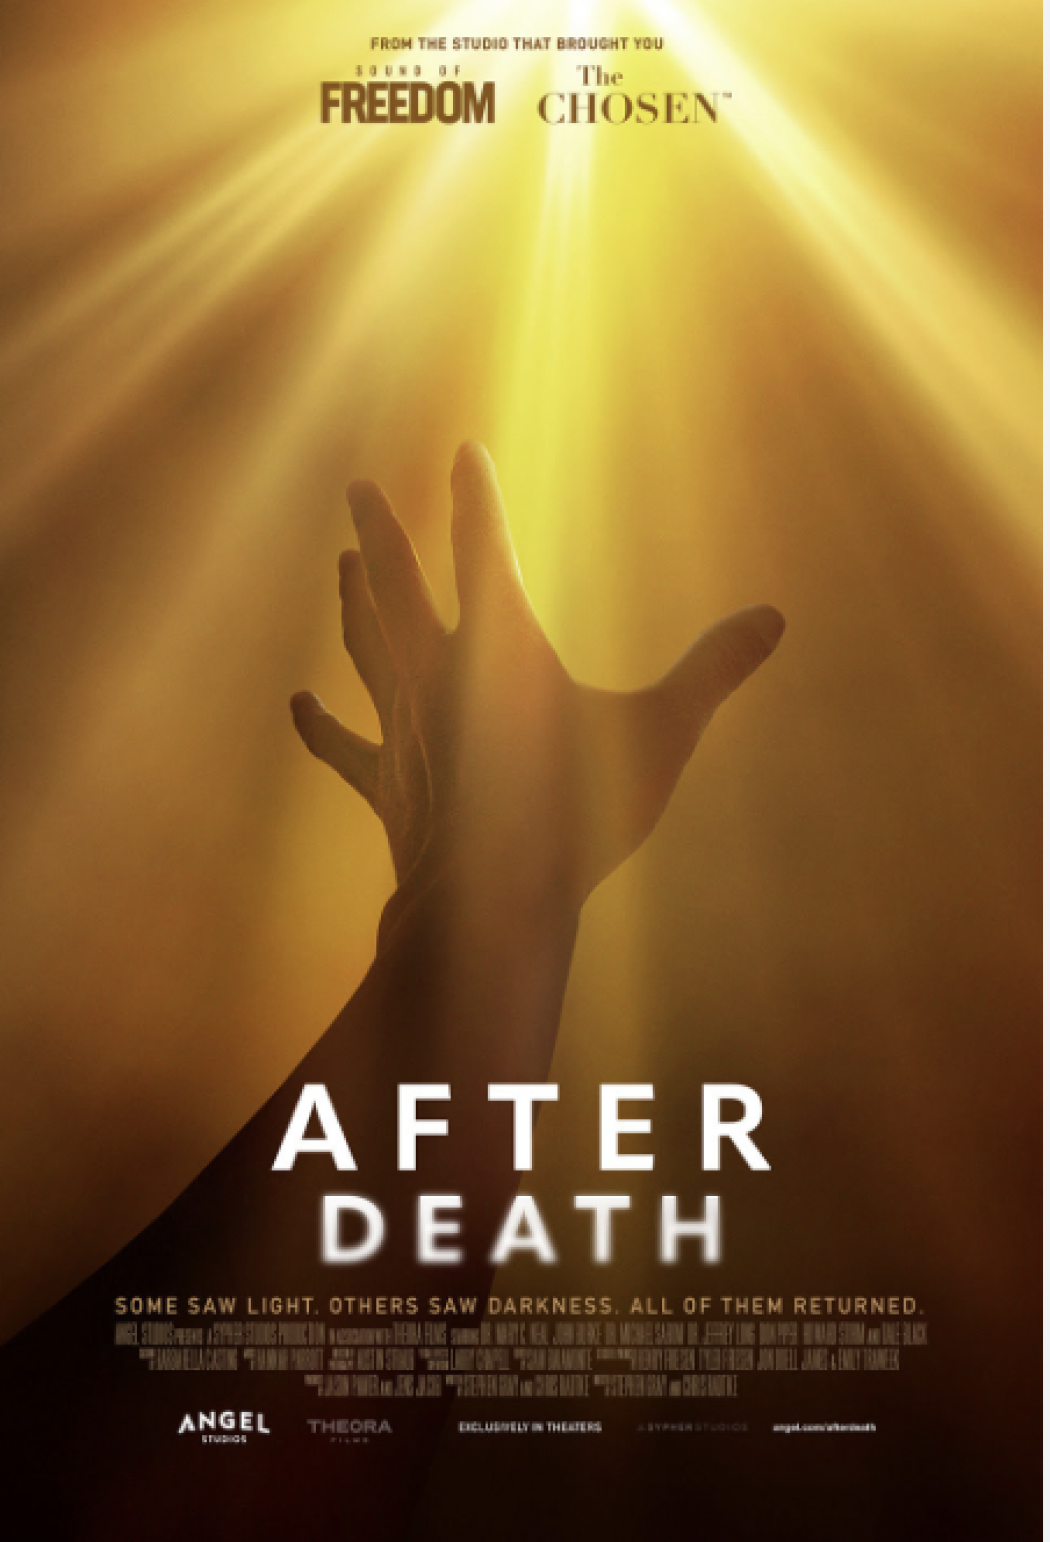 Succès du documentaire ‘After Death’ au box-office américain